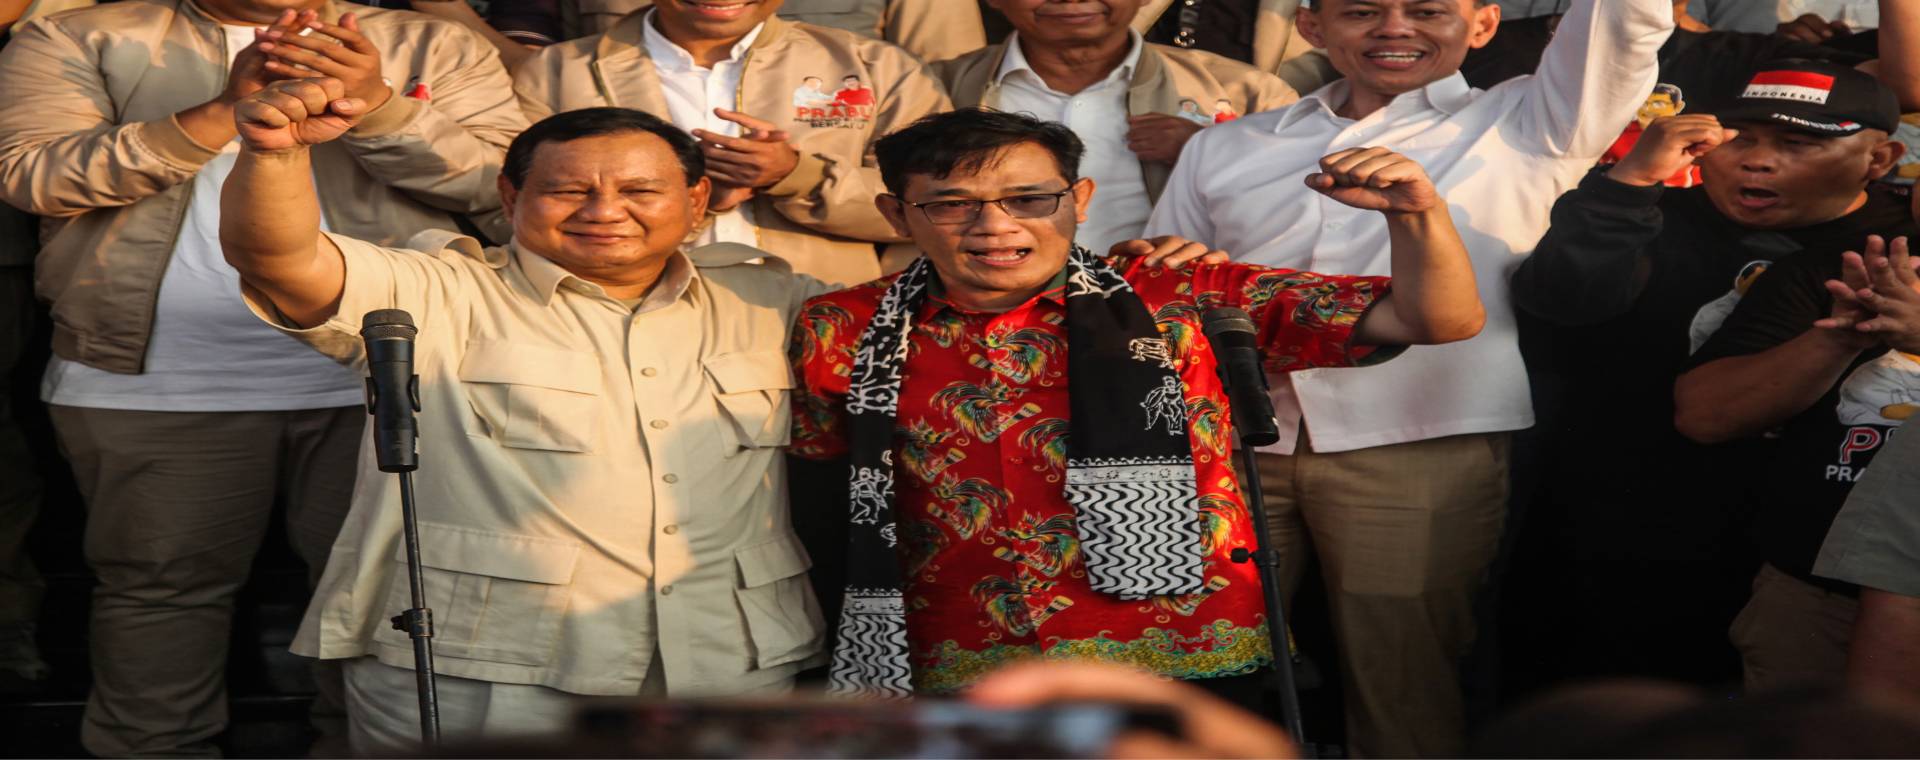  Dipecat PDIP, Budiman Sudjatmiko: Saya Terima dengan Lapang Dada